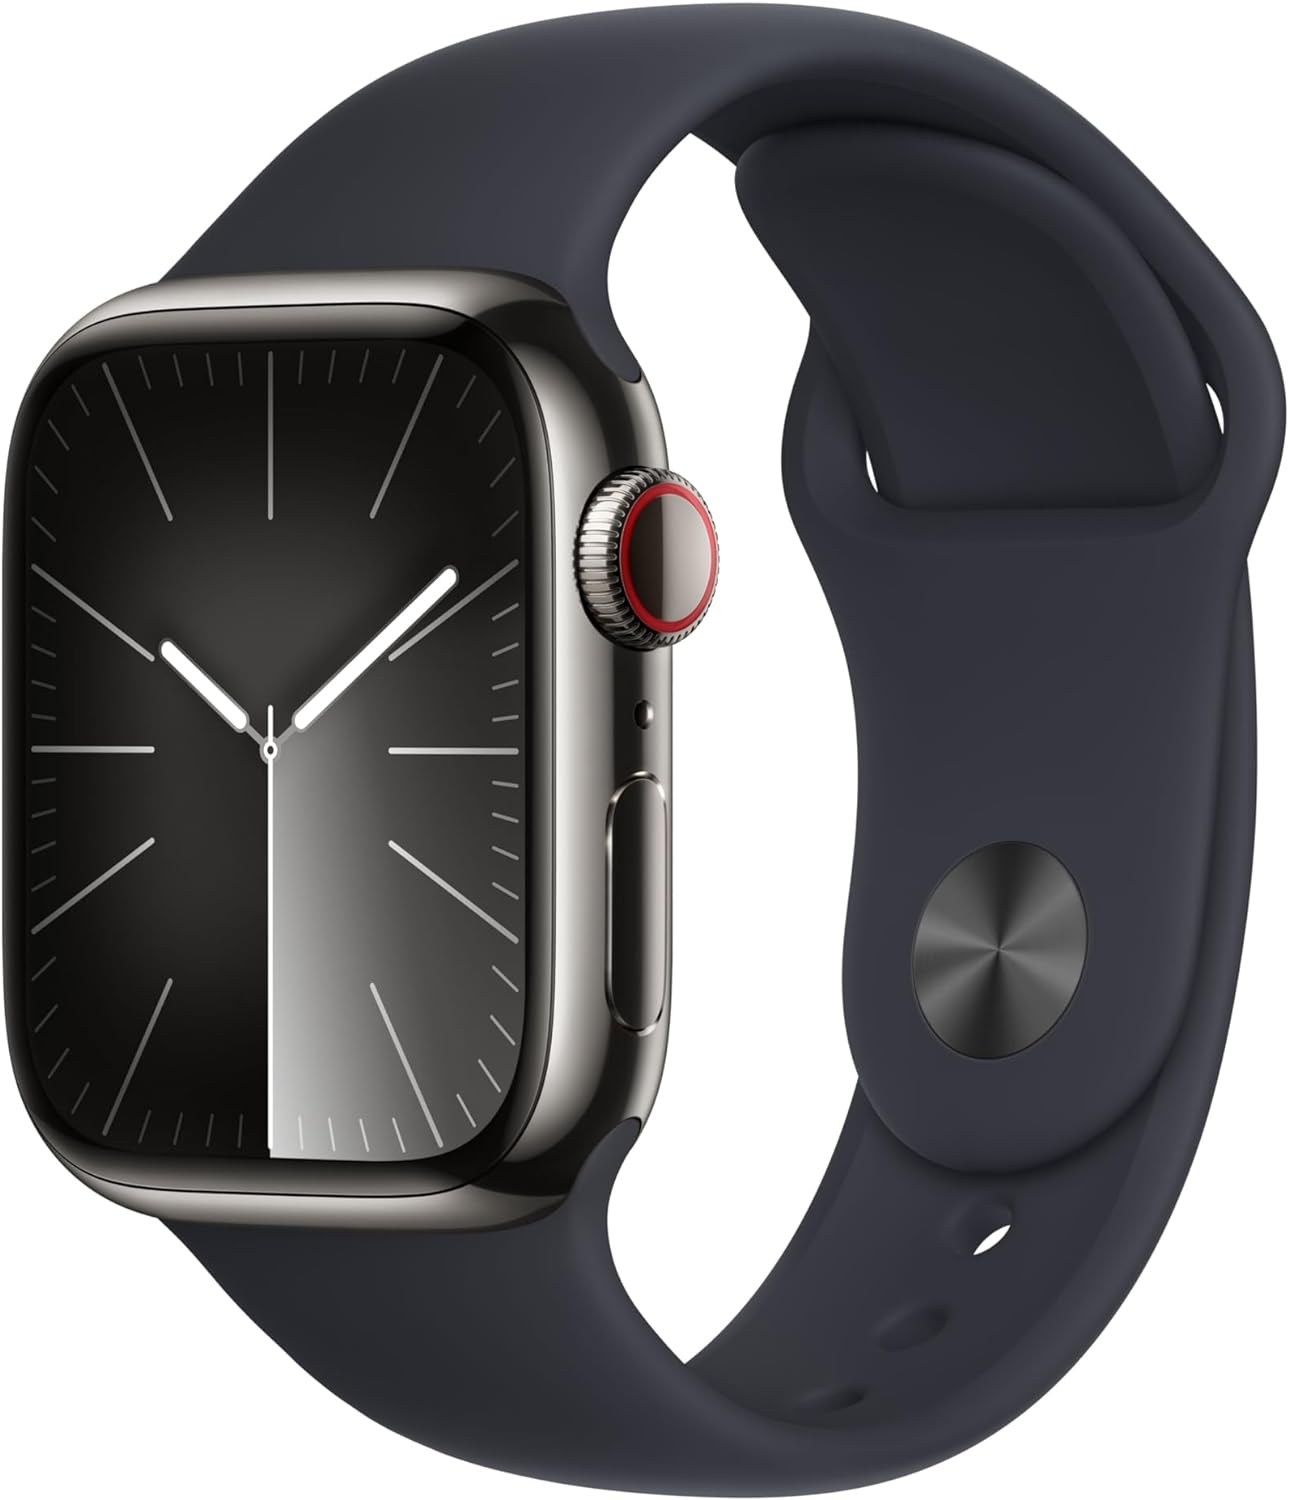 Apple Watch 9 vs Apple Watch 8